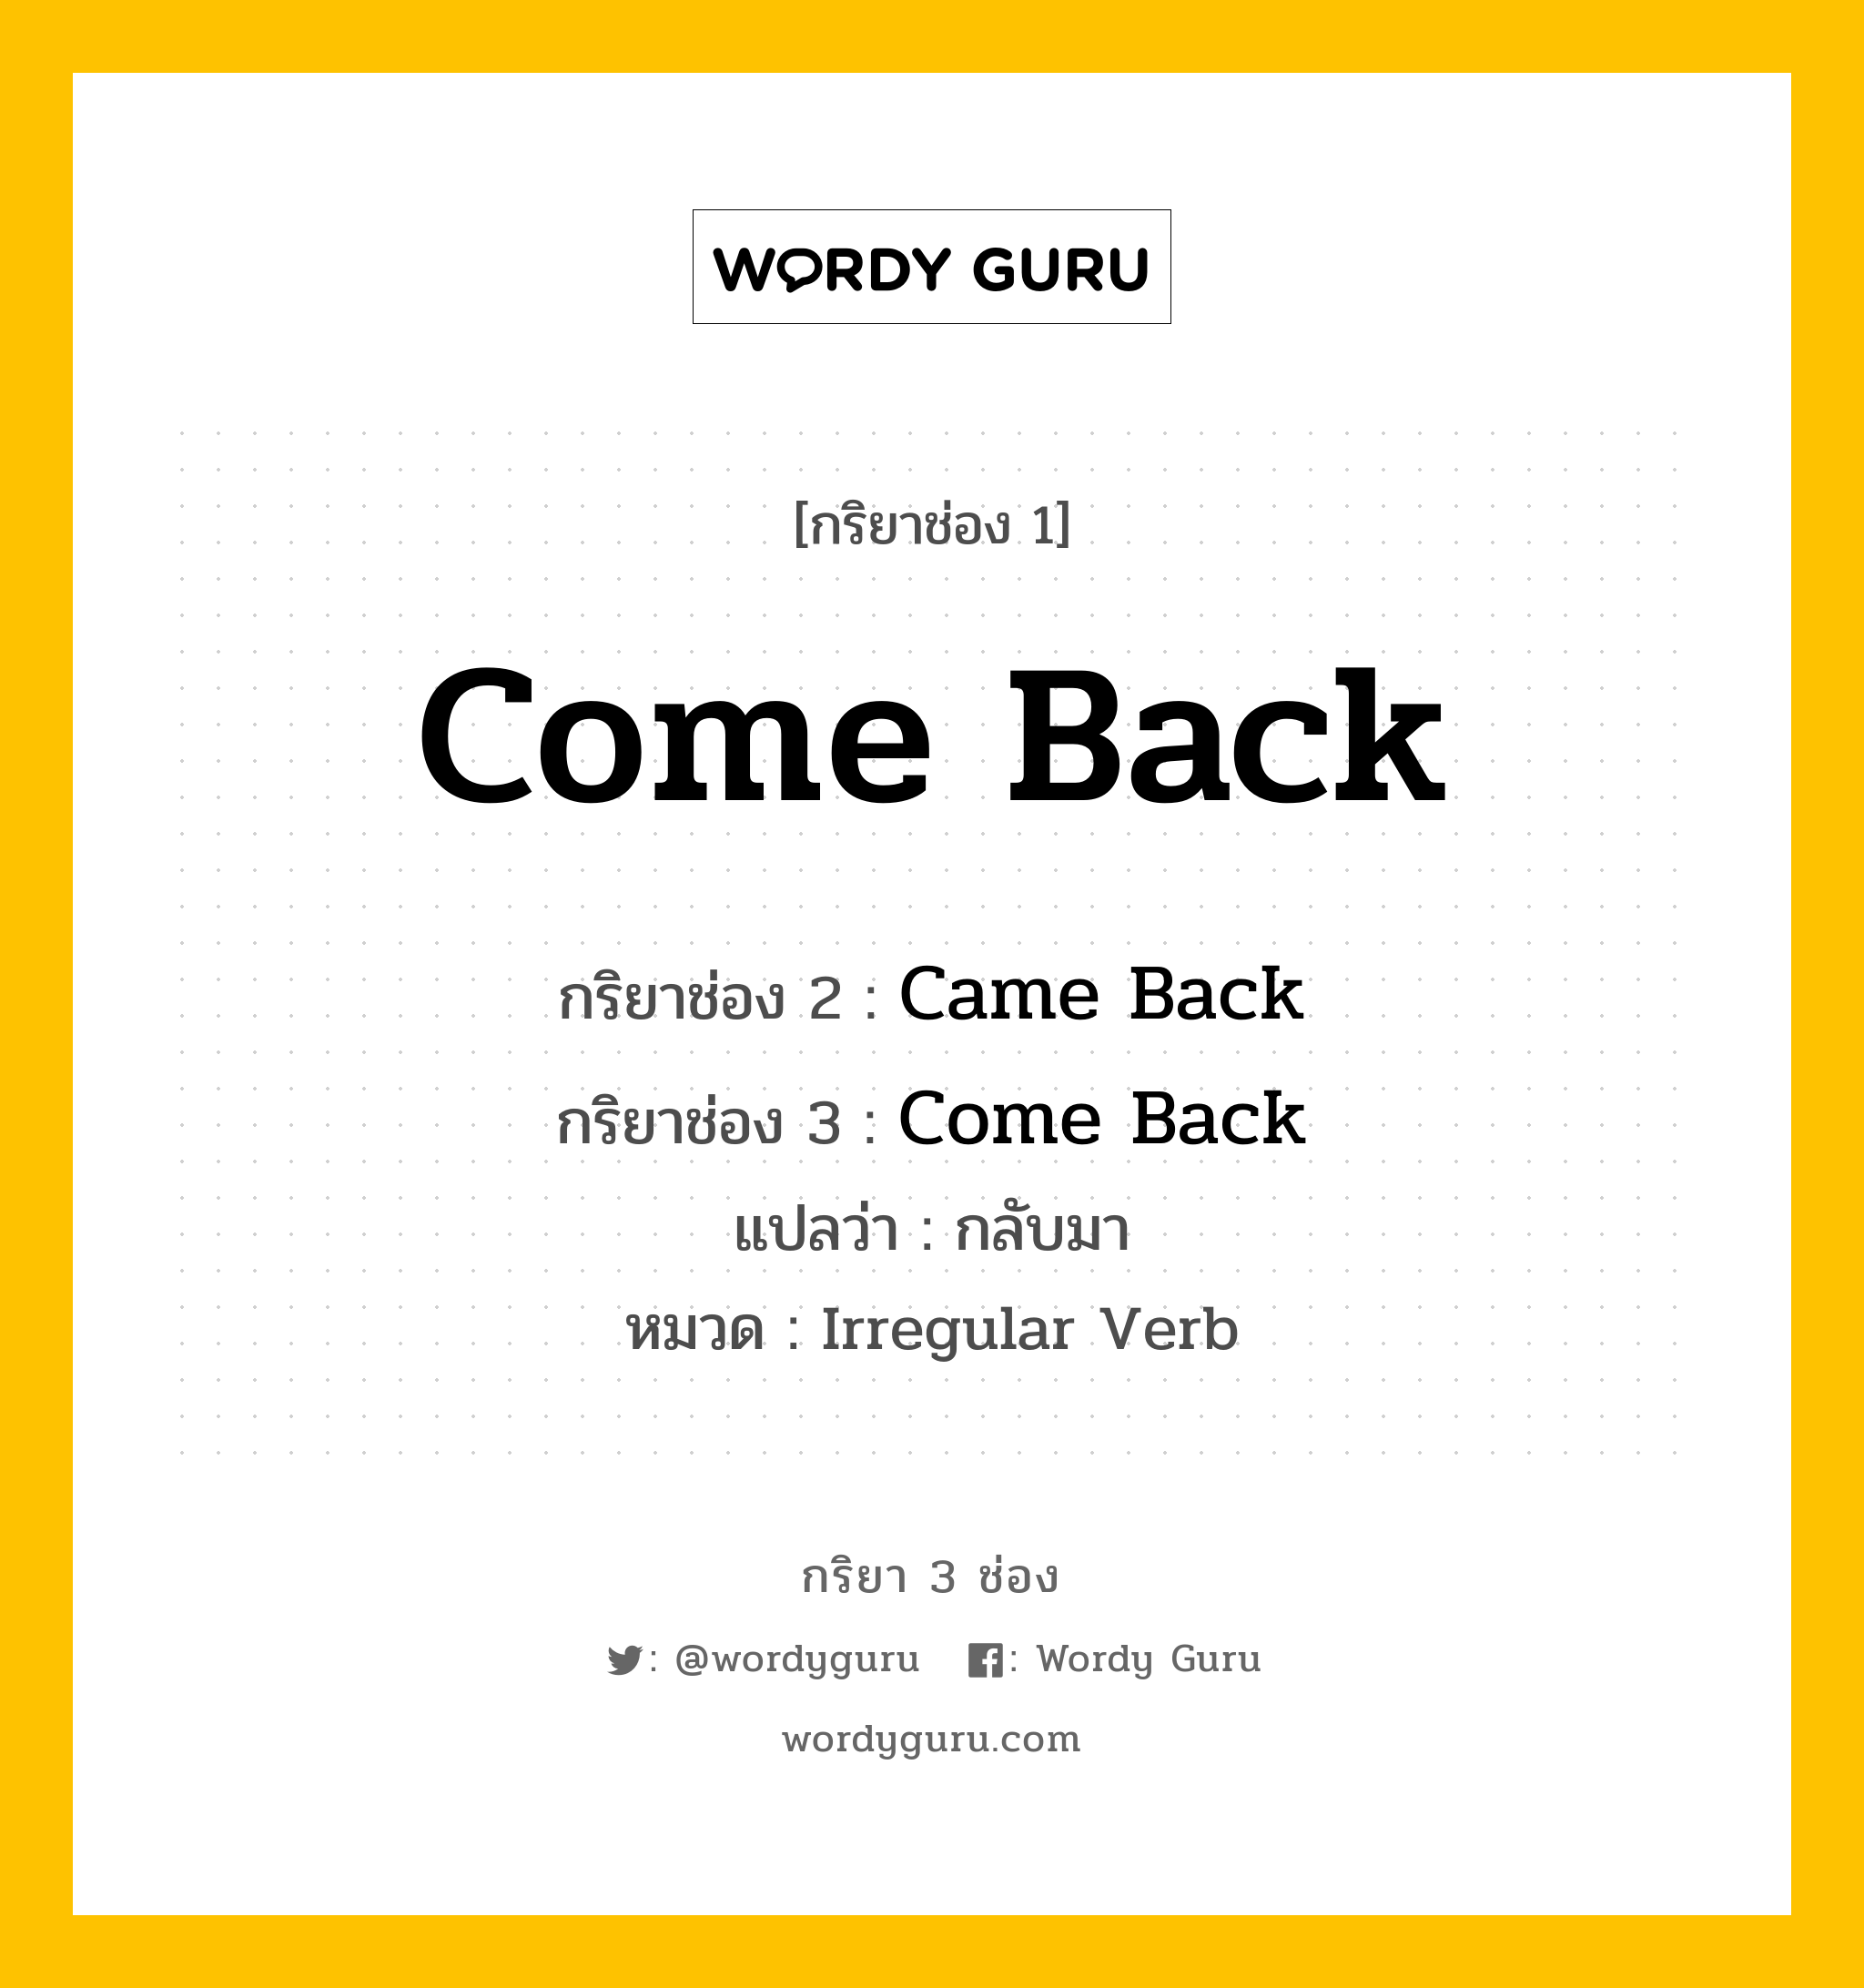 กริยา 3 ช่อง: Come Back ช่อง 2 Come Back ช่อง 3 คืออะไร, กริยาช่อง 1 Come Back กริยาช่อง 2 Came Back กริยาช่อง 3 Come Back แปลว่า กลับมา หมวด Irregular Verb หมวด Irregular Verb